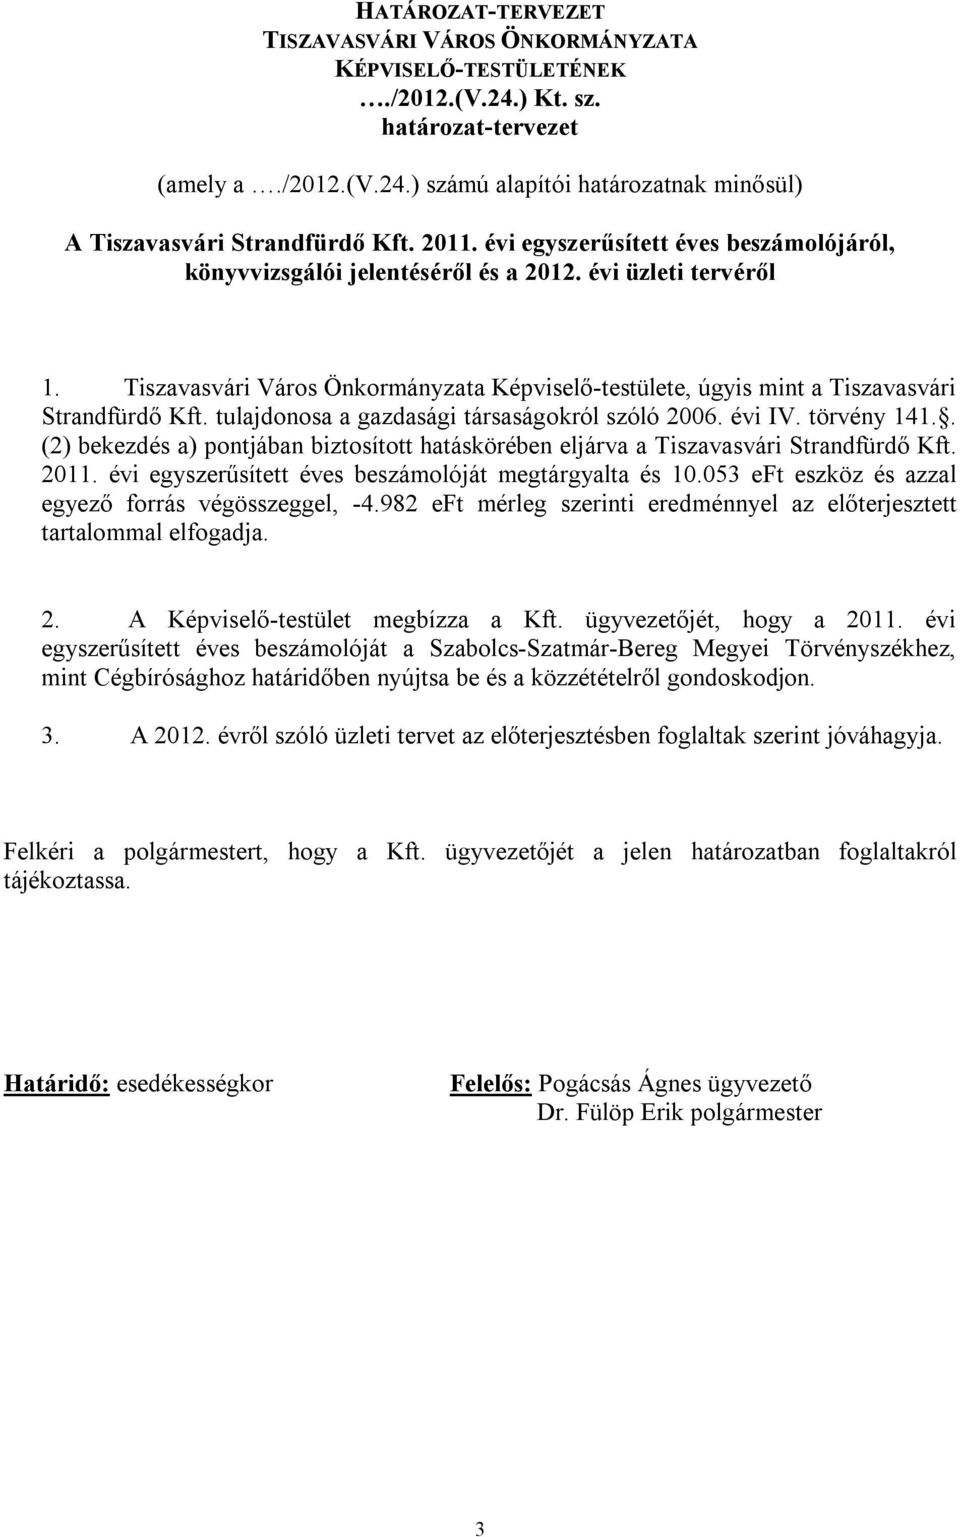 Tiszavasvári Város Önkormányzata Képviselő-testülete, úgyis mint a Tiszavasvári Strandfürdő Kft. tulajdonosa a gazdasági társaságokról szóló 2006. évi IV. törvény 141.